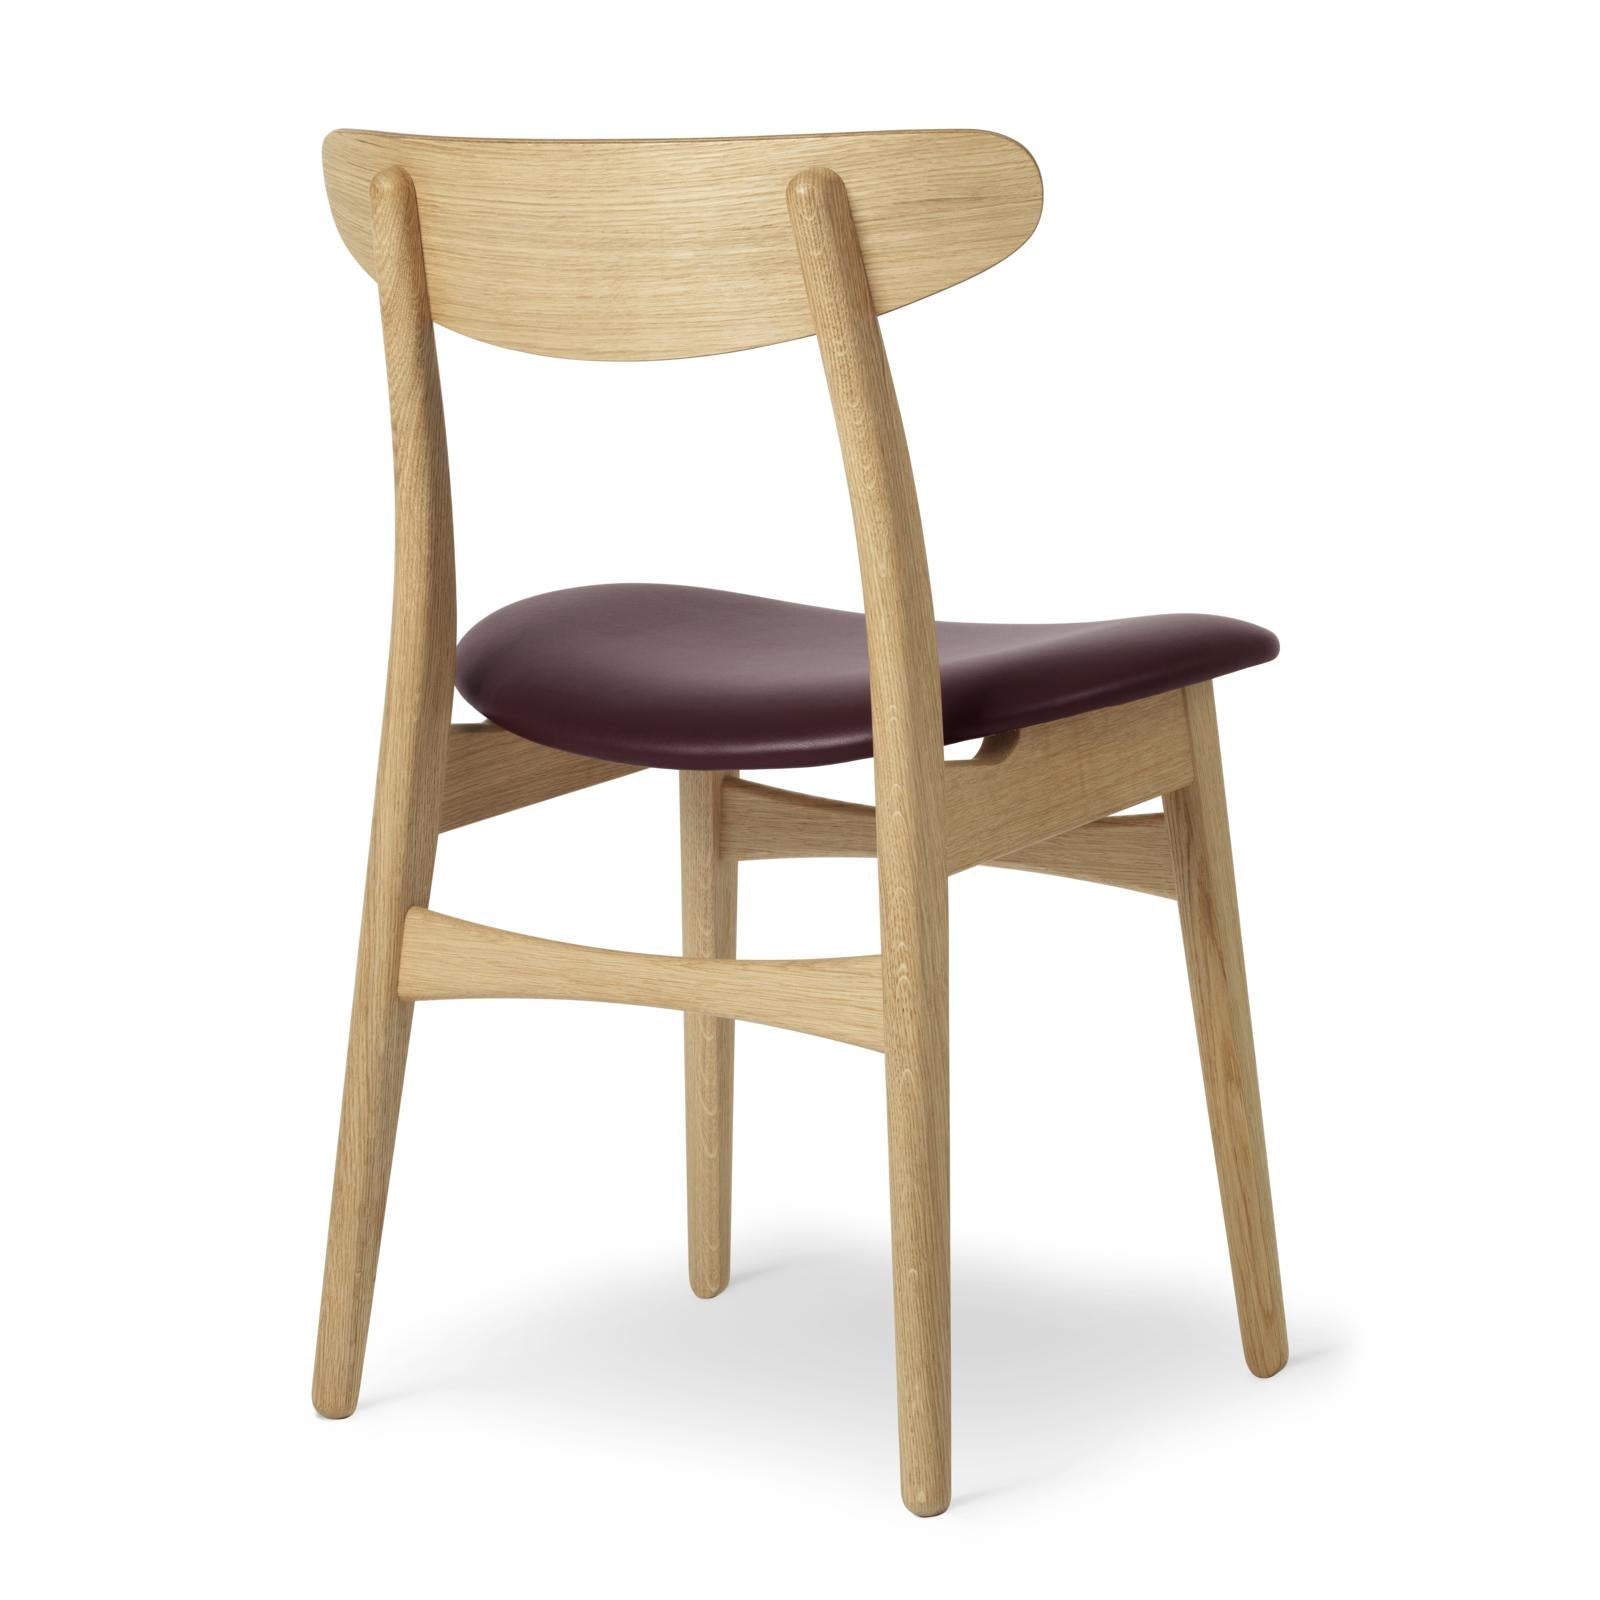 Carl Hansen CH30P -stol, oljad ek, vinröd läder